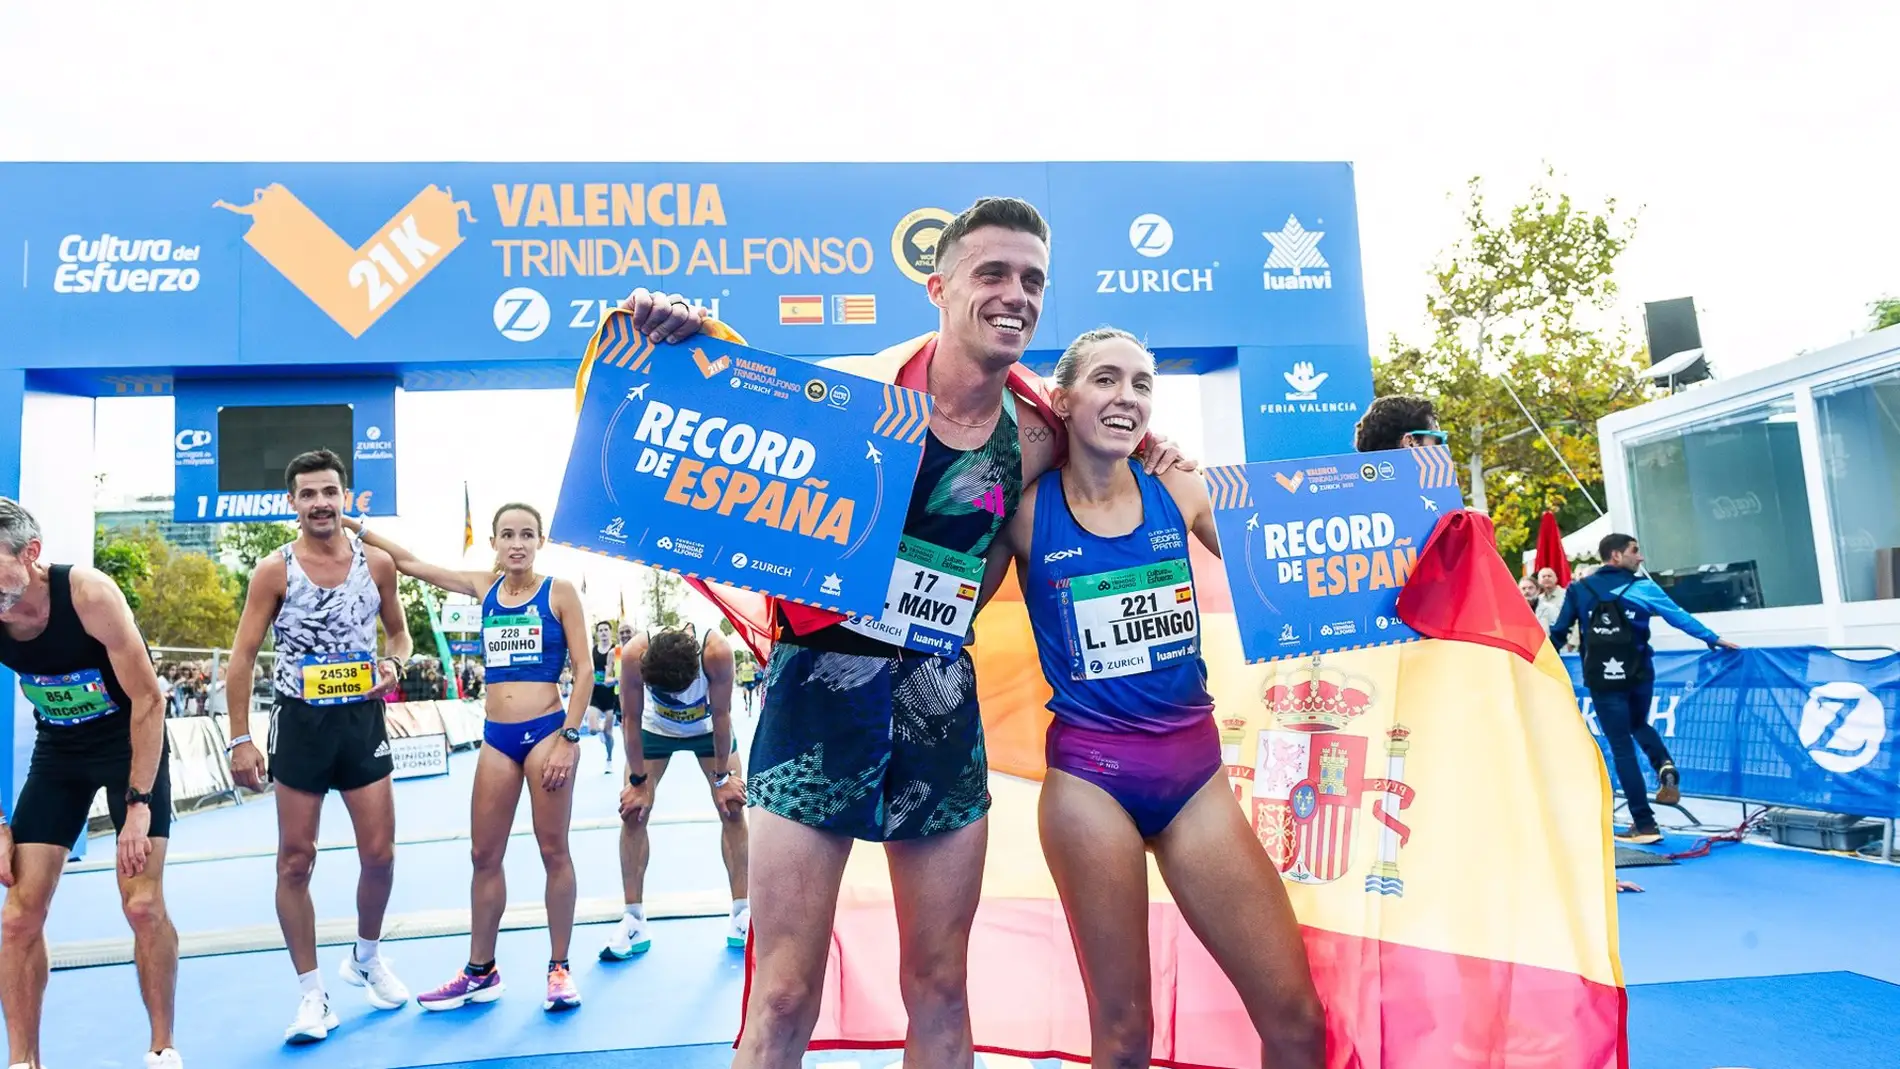 La extremeña Laura Luengo bate el récord de España de medio maratón en Valencia